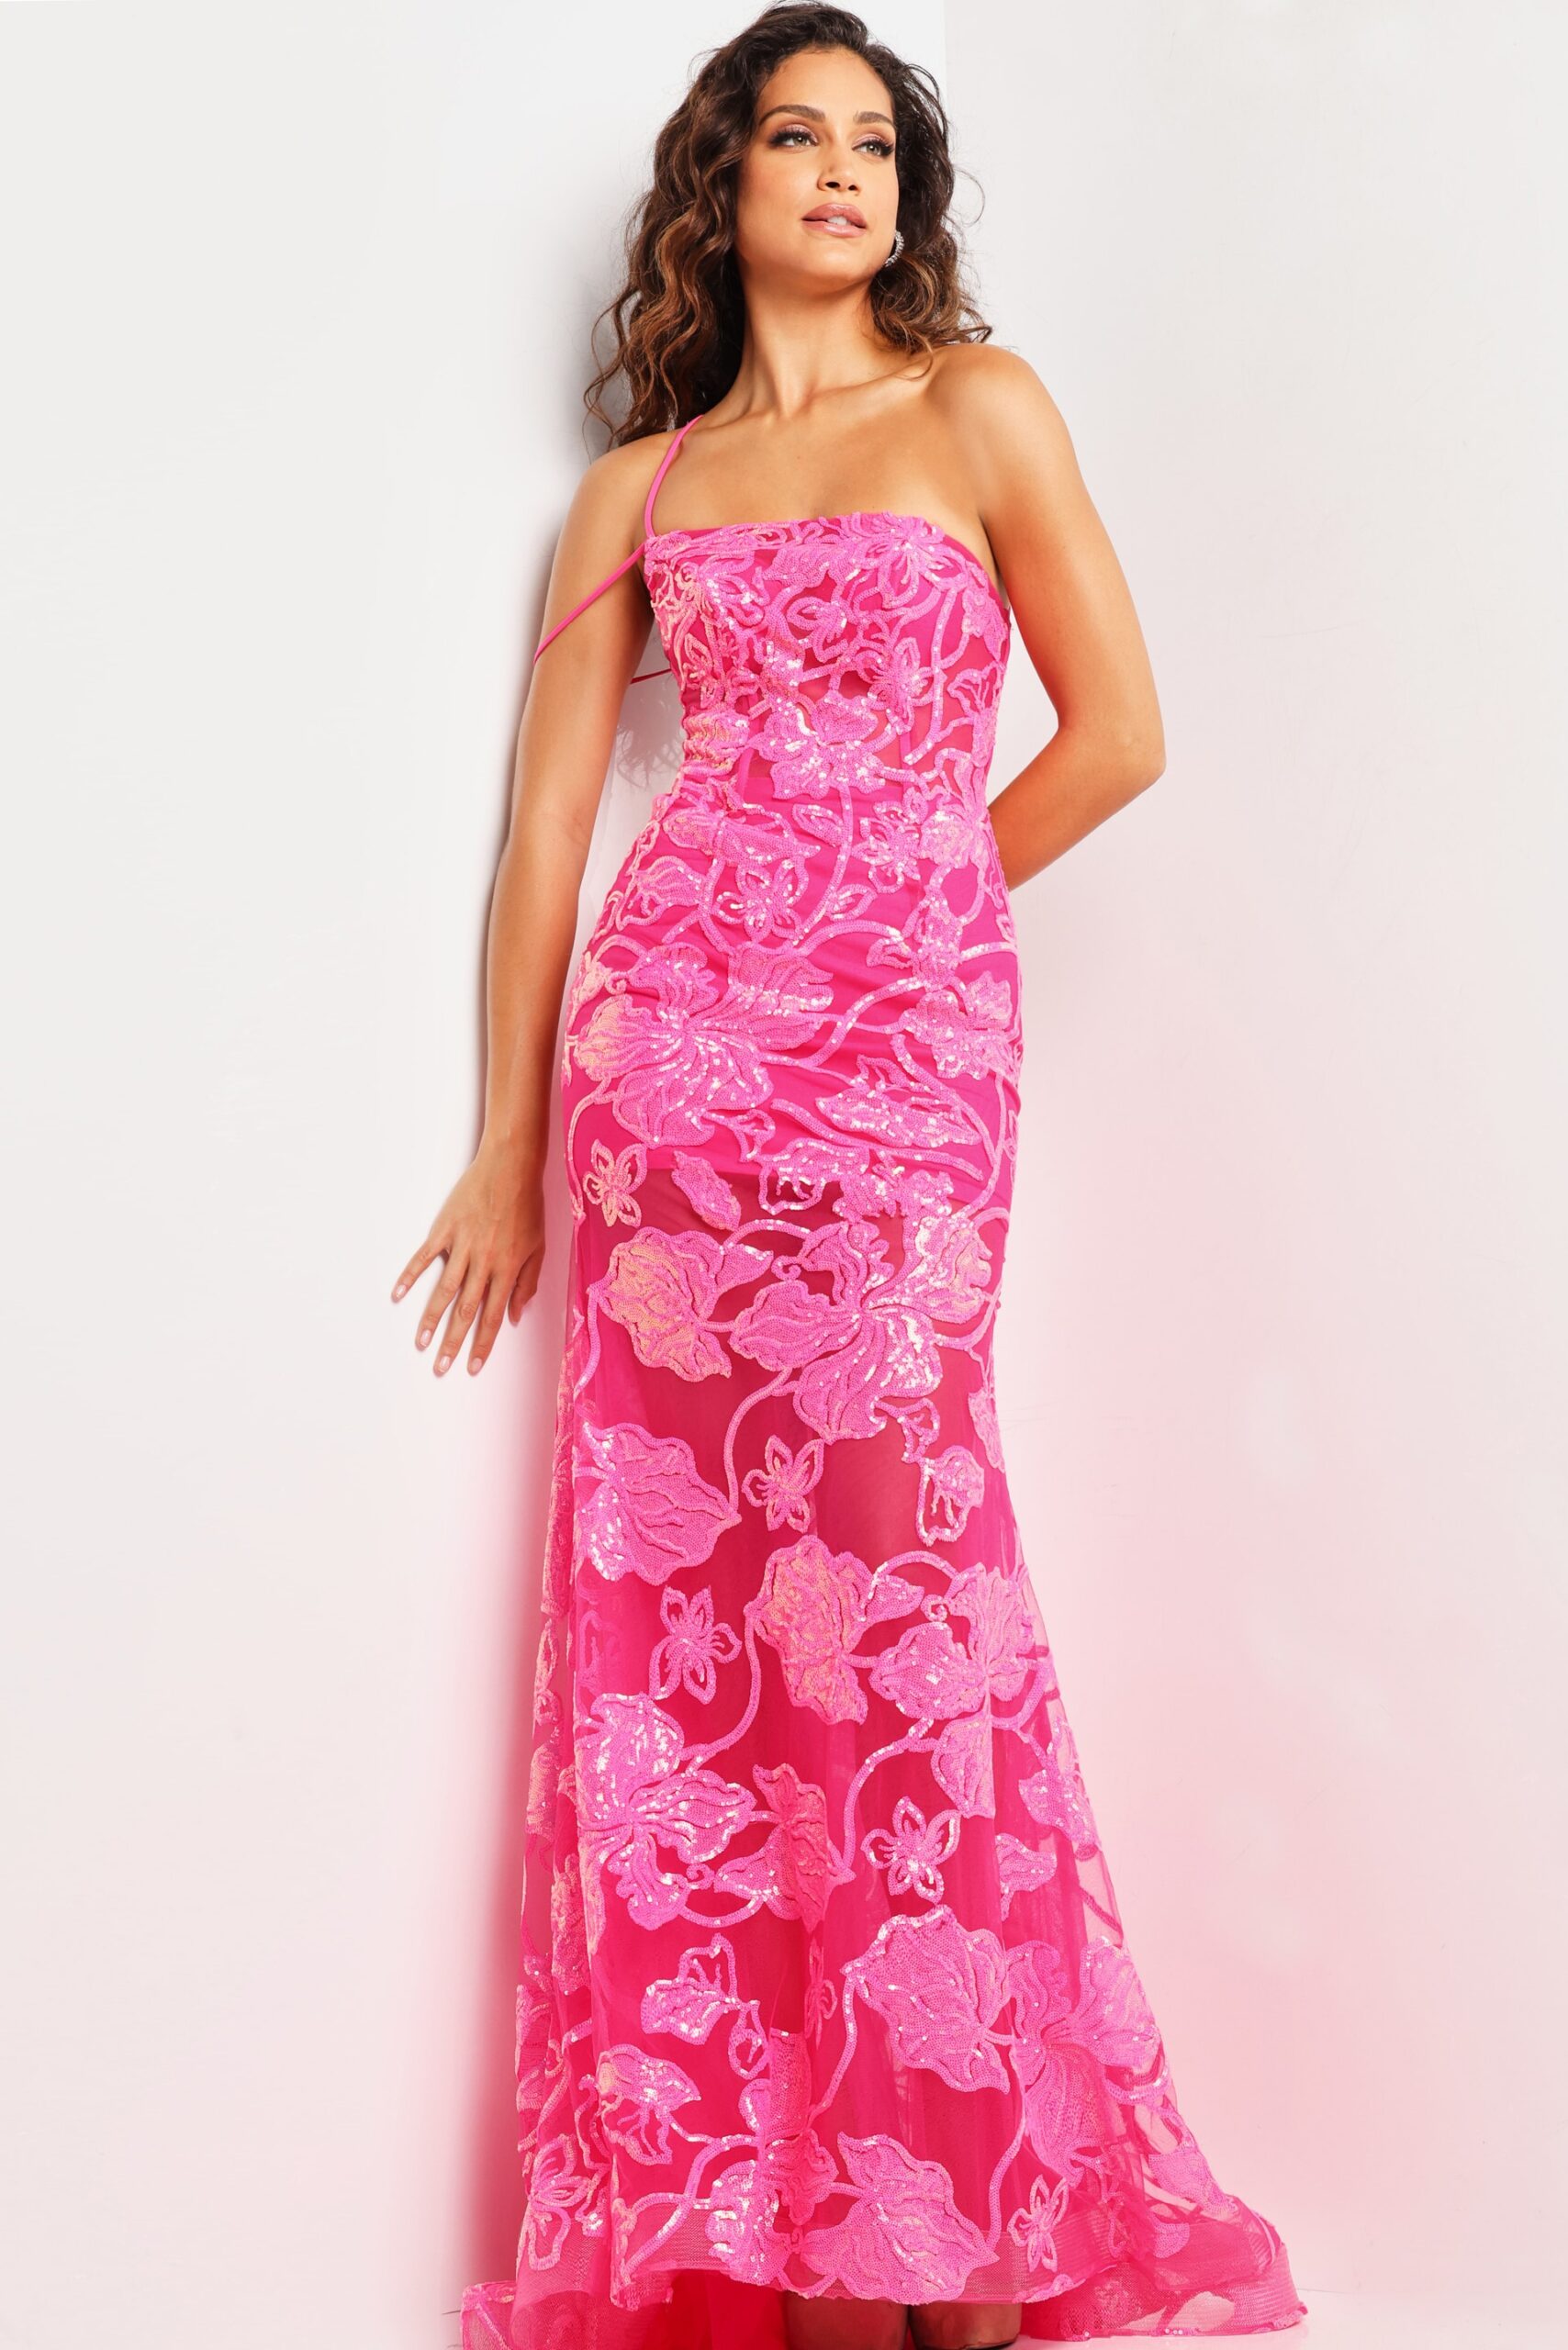 Hot Pink Floral One Shoulder Dress 38463